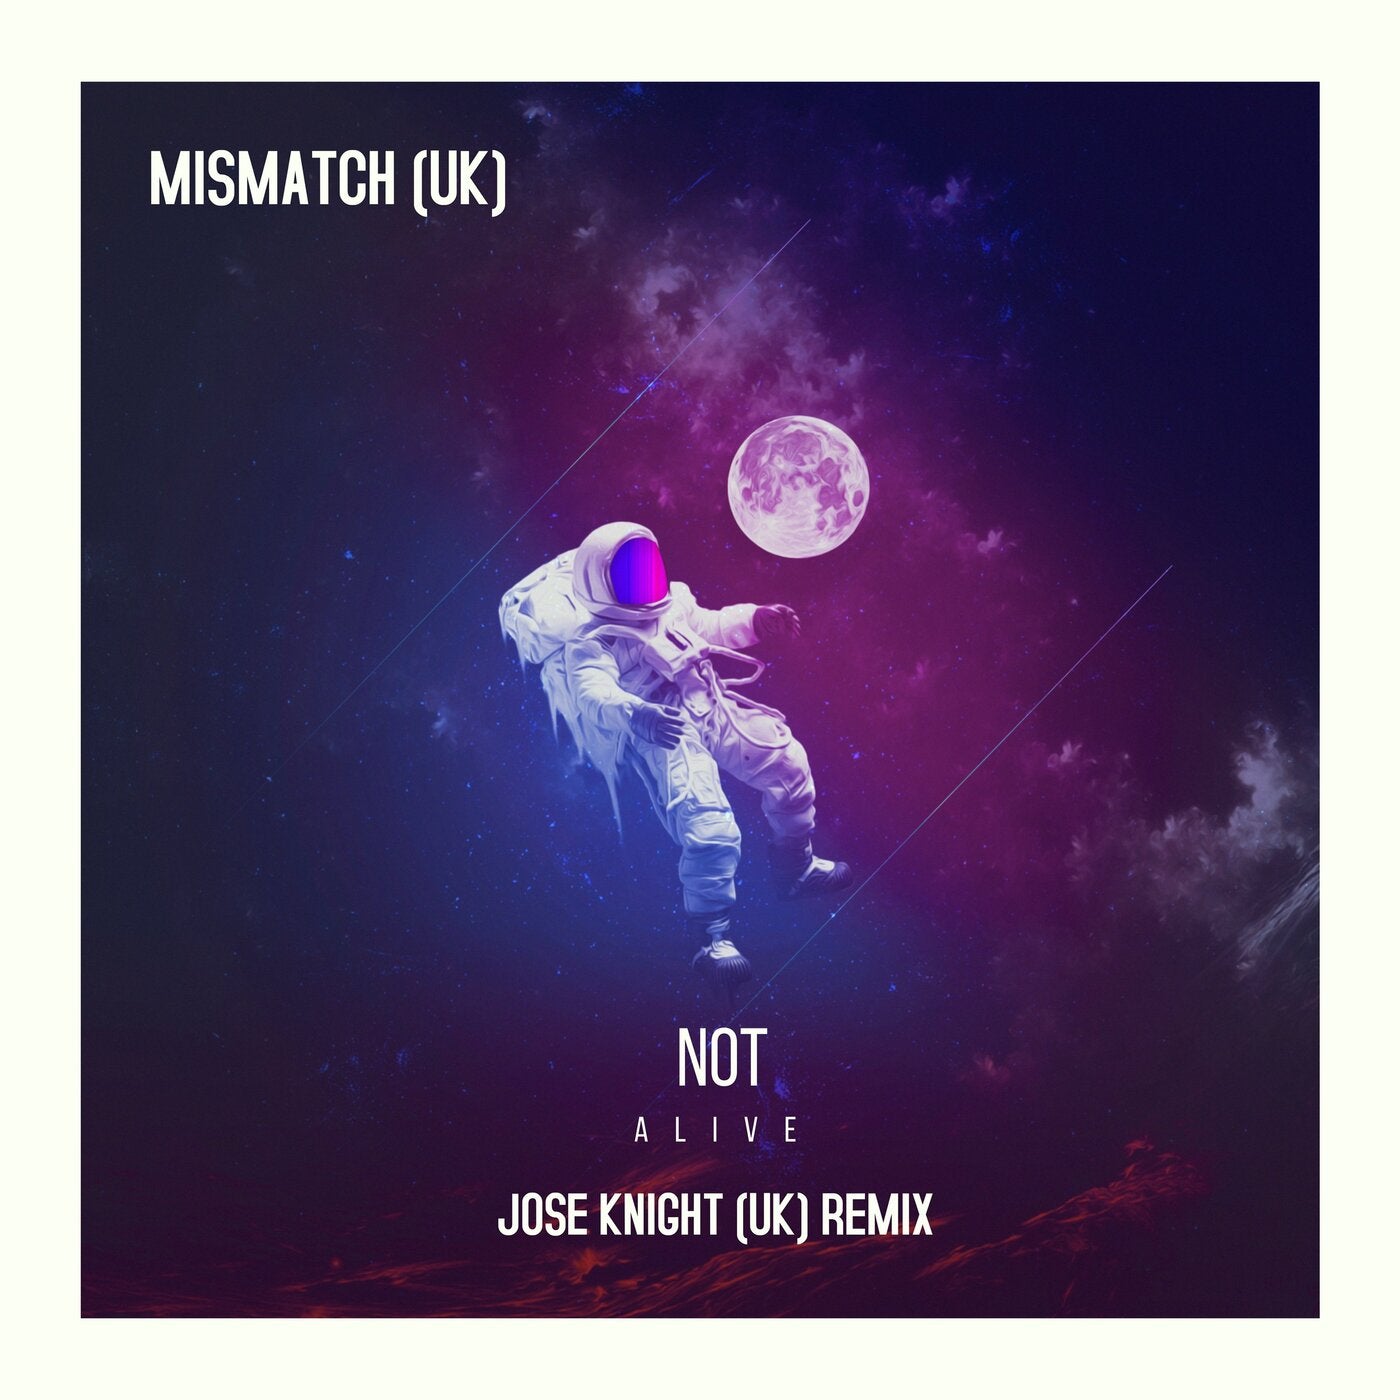 Not Alive (Jose Knight Remix)